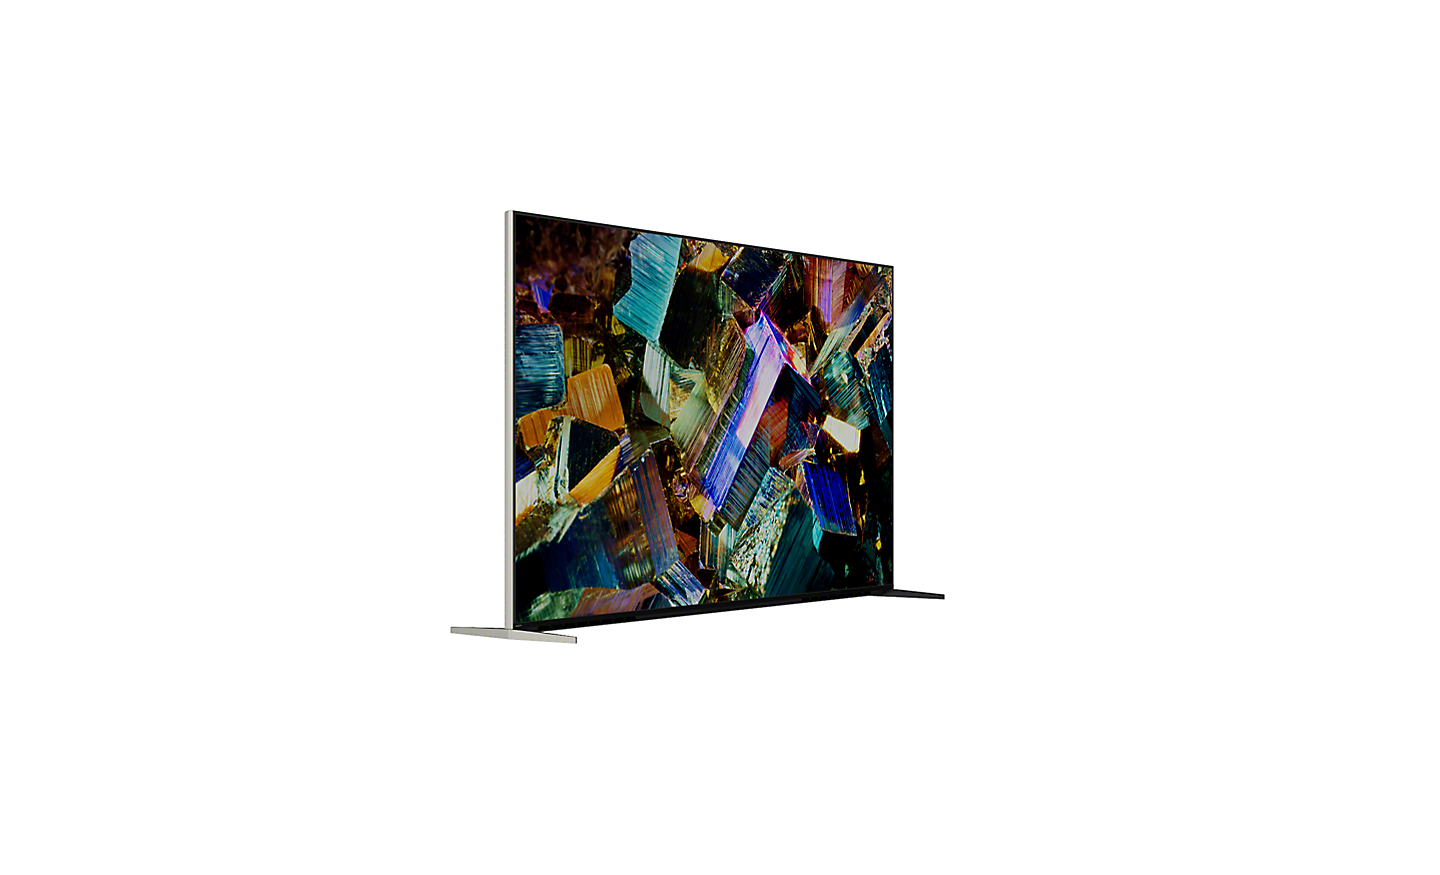 Visionneuse à 360° coulissante montrant une vue à 360° du téléviseur Z9K et affichant une capture d’écran de cristaux colorés